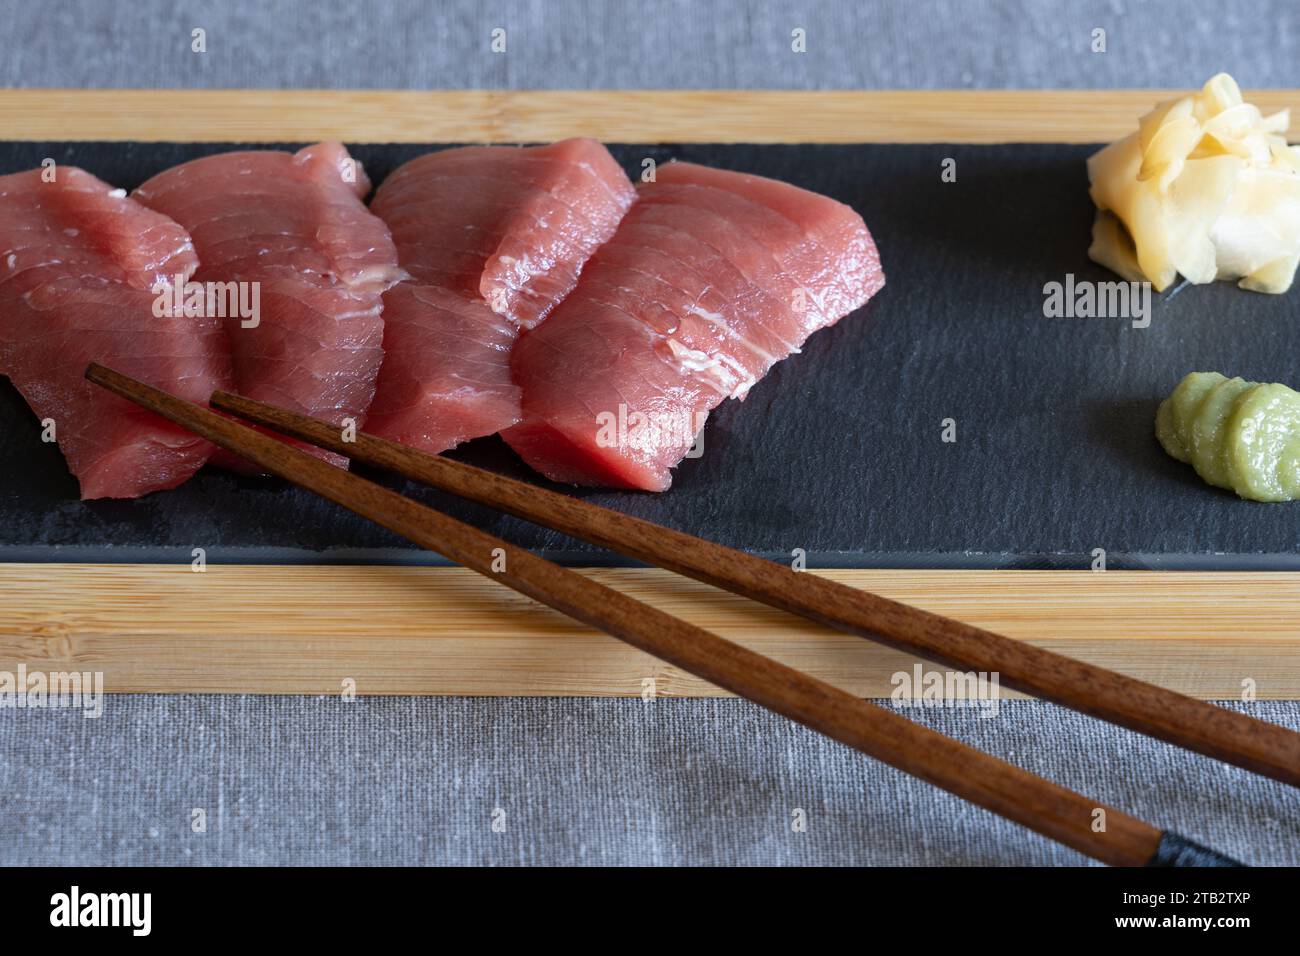 Cuisine maison de style japonais - sashimi de thon Akami cru maison sur une planche de service en ardoise avec baguettes en bois, gingembre et wasabi. ROYAUME-UNI Banque D'Images